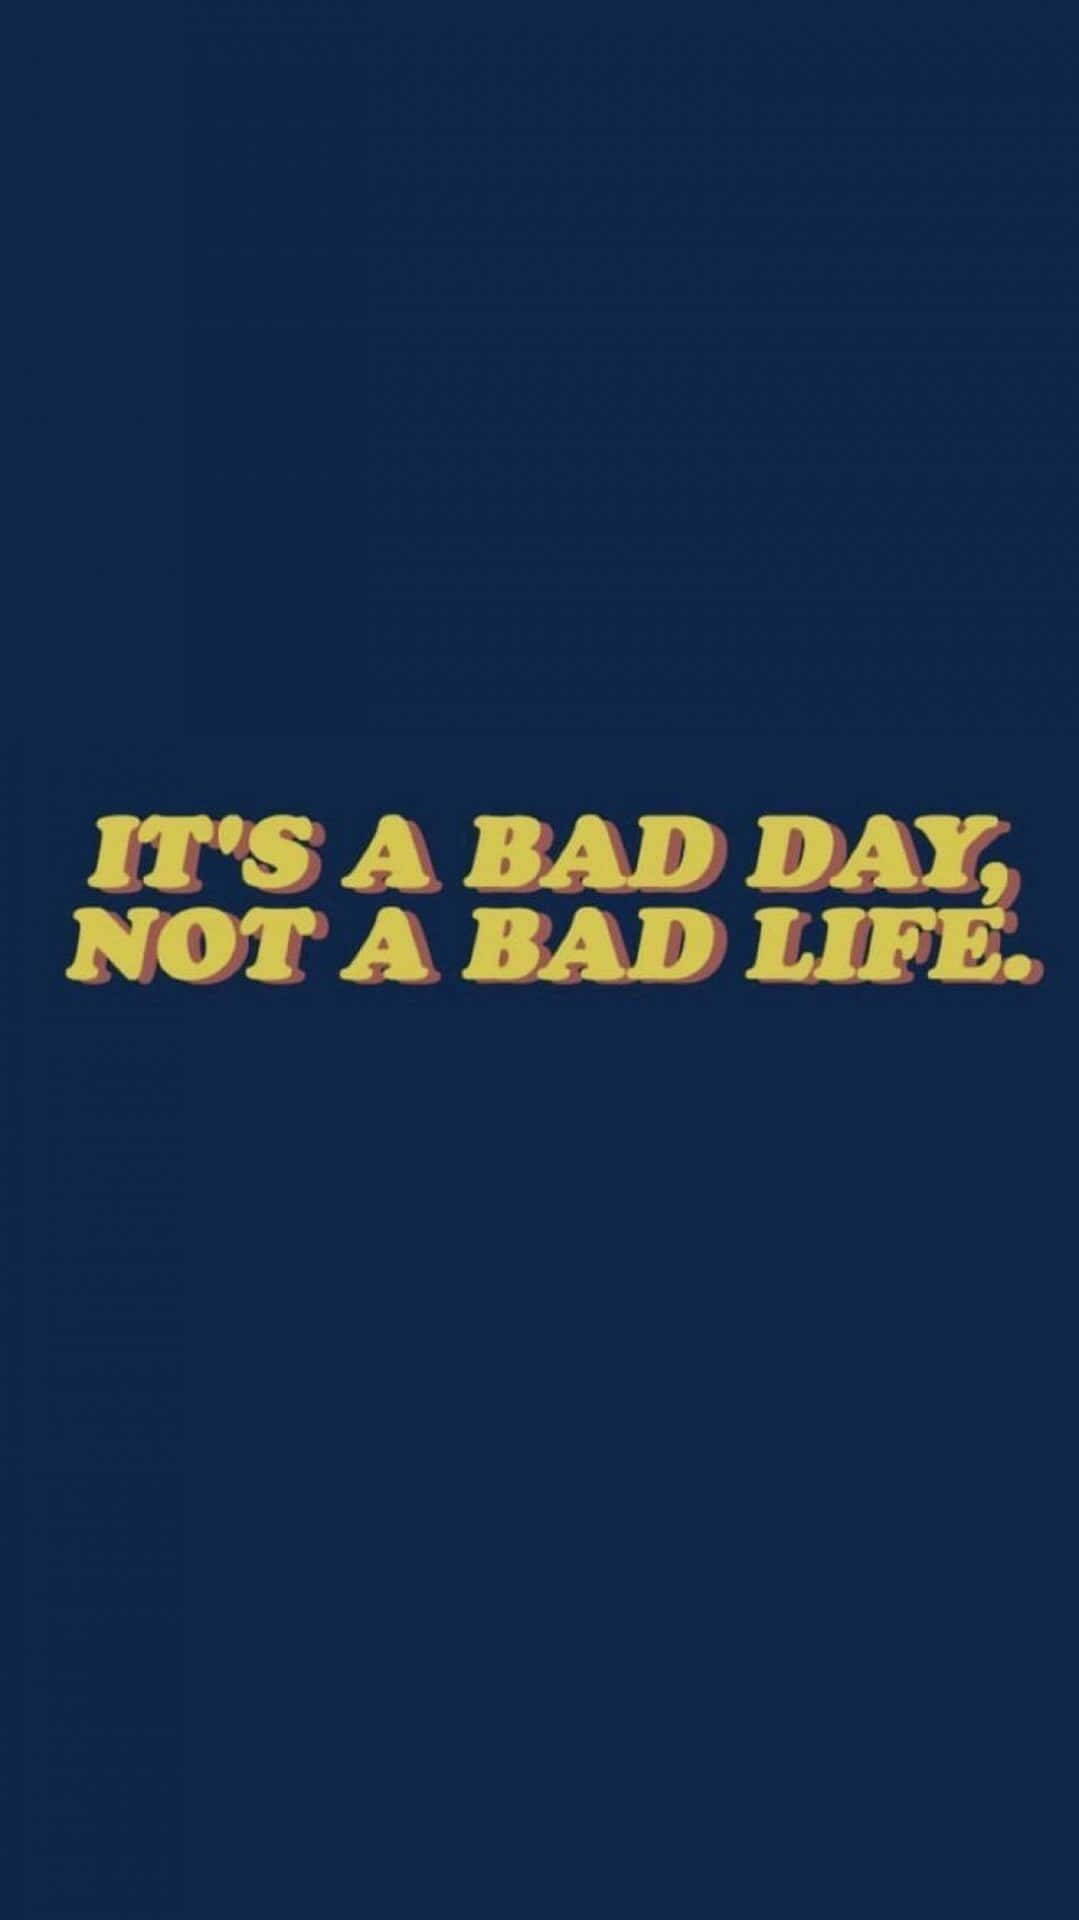 Det er en dårlig dag, ikke et dårligt liv T-shirt. Wallpaper